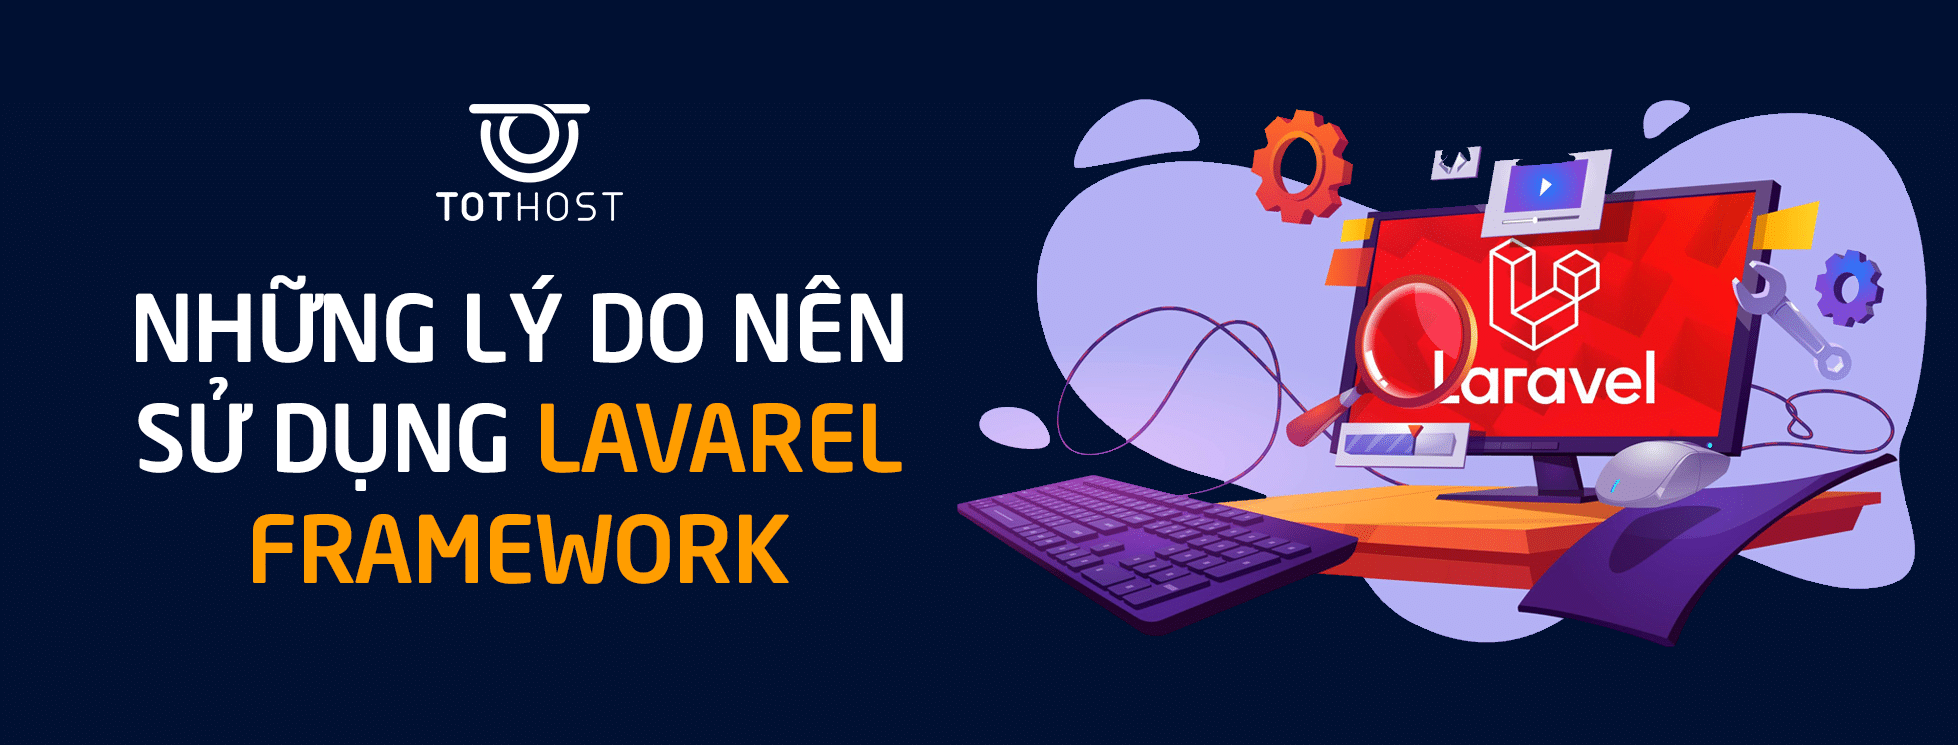 Laravel là gì? Lý do nên lựa chọn Lavarel Framework